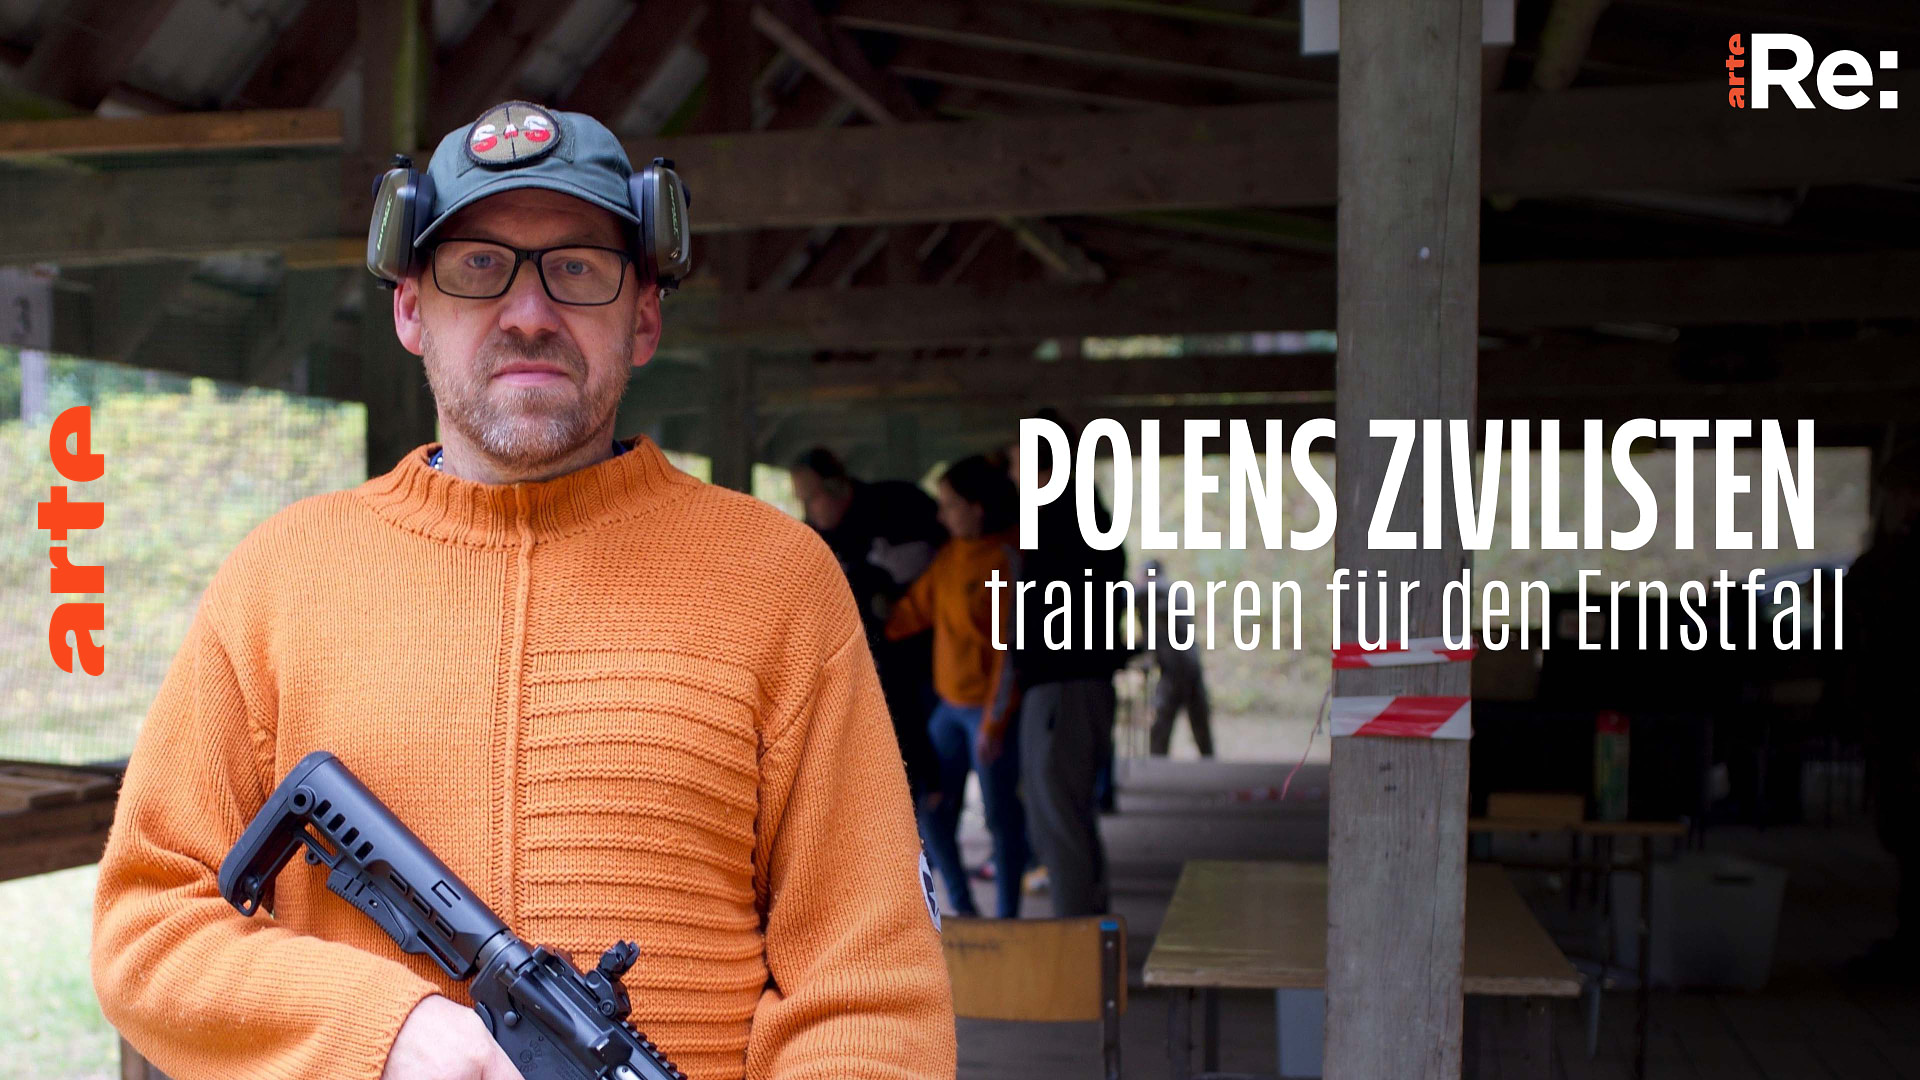 Re: Polens Zivilisten trainieren für den Ernstfall